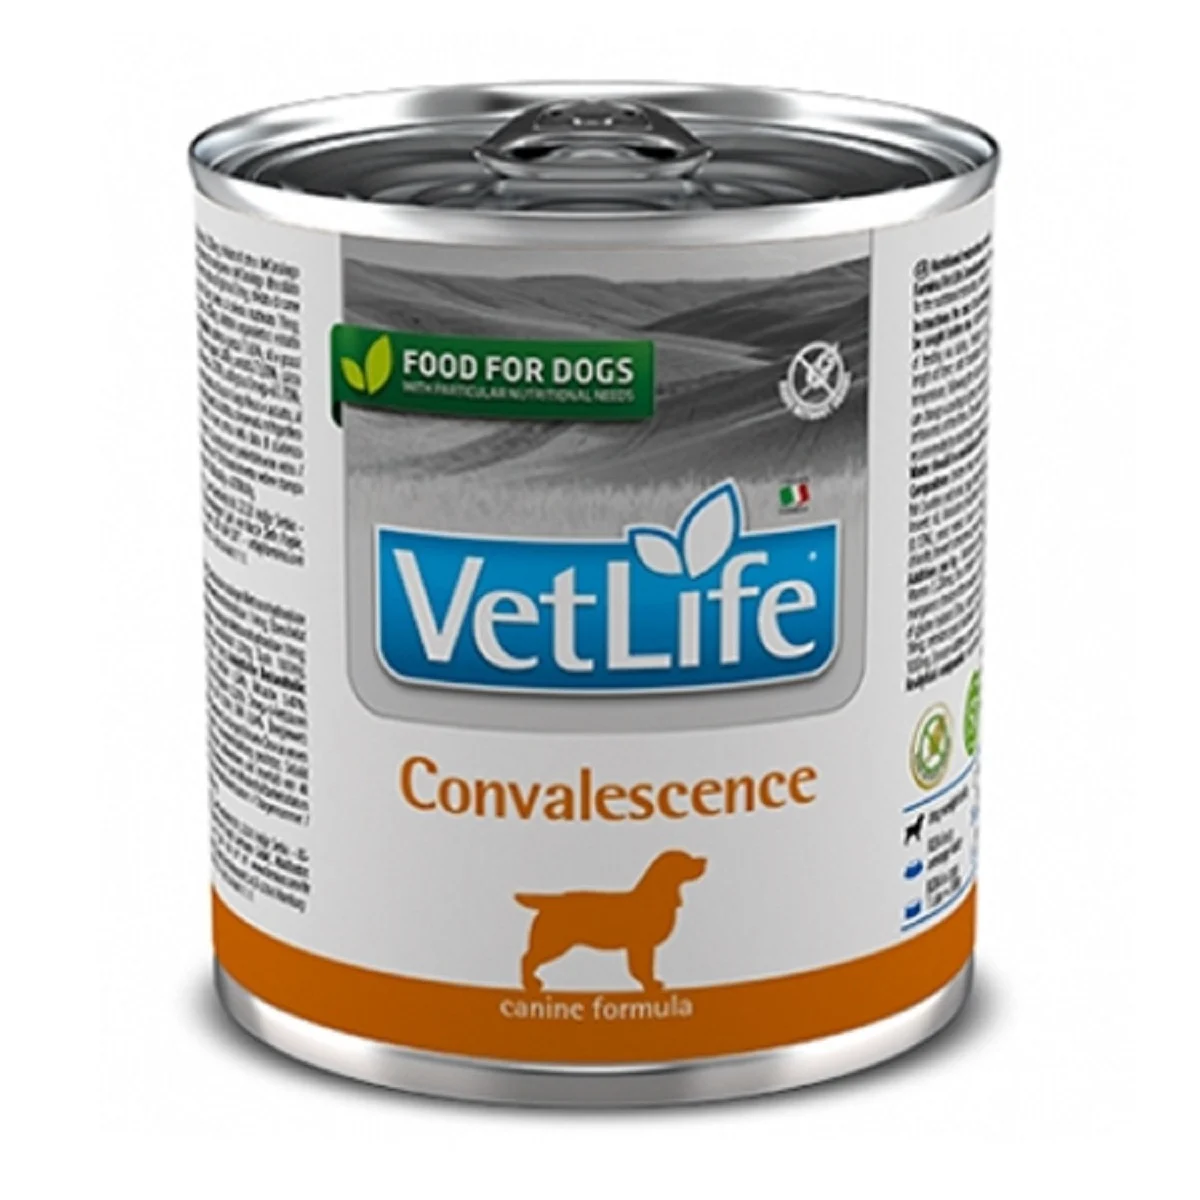 וט לייף אוכל רפואי לכלבים קונבלסנס שימורים 300 גרם Farmina Vet life